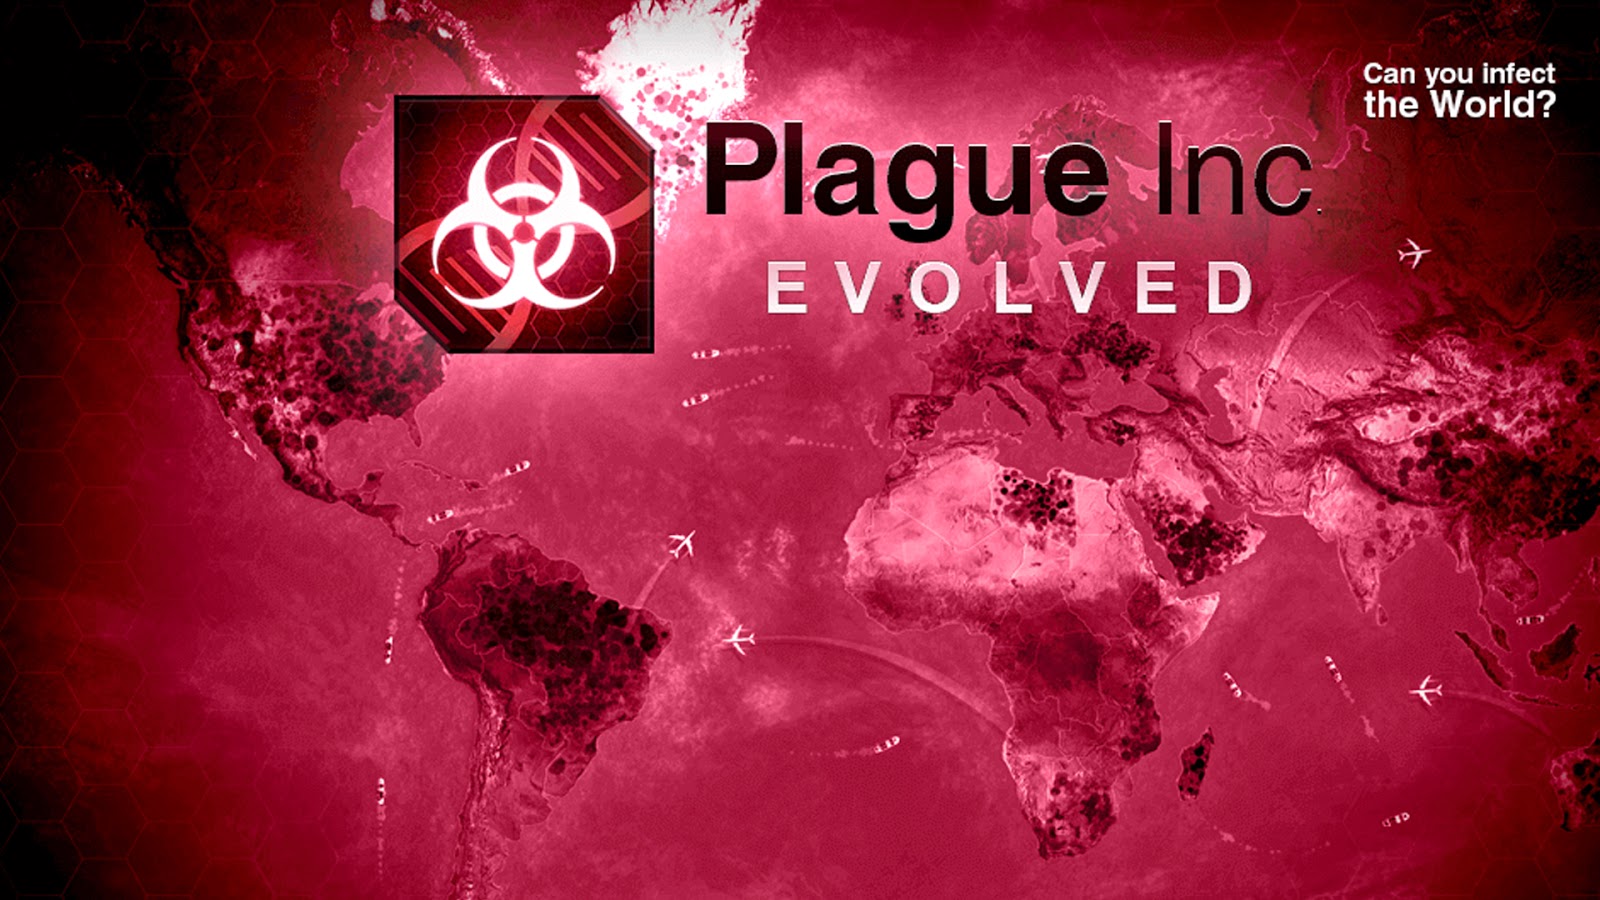 Премиум версия плагуе инк. Плагуе Инк эволвед. Заражение игра Plague Inc. Plague Inc картинки. Plague Inc фон.